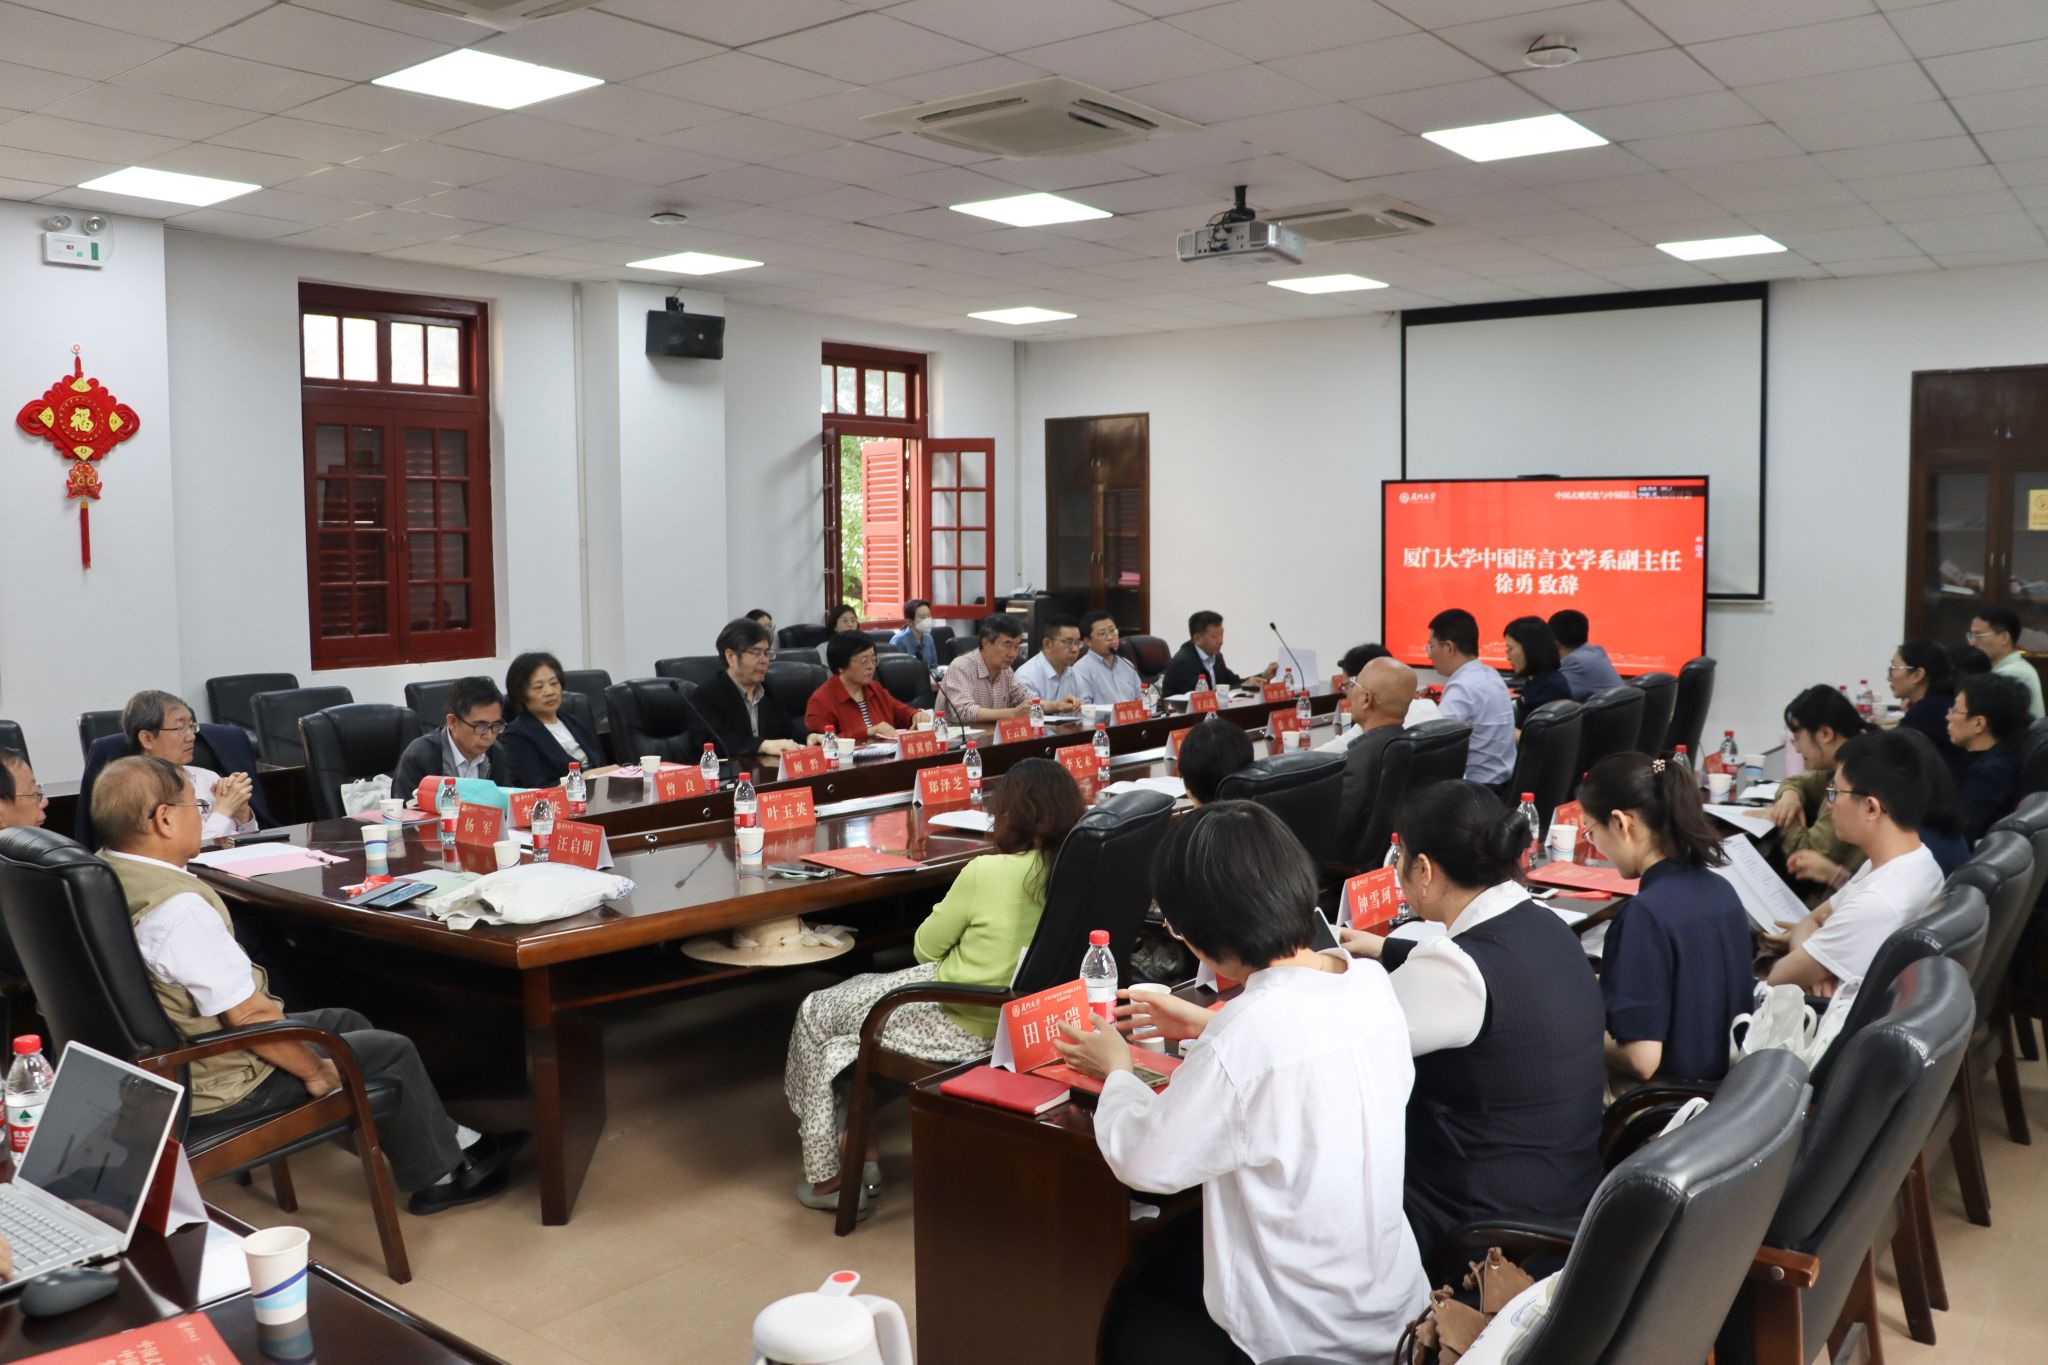 中国式现代化与中国语言学科发展研讨会顺利举办